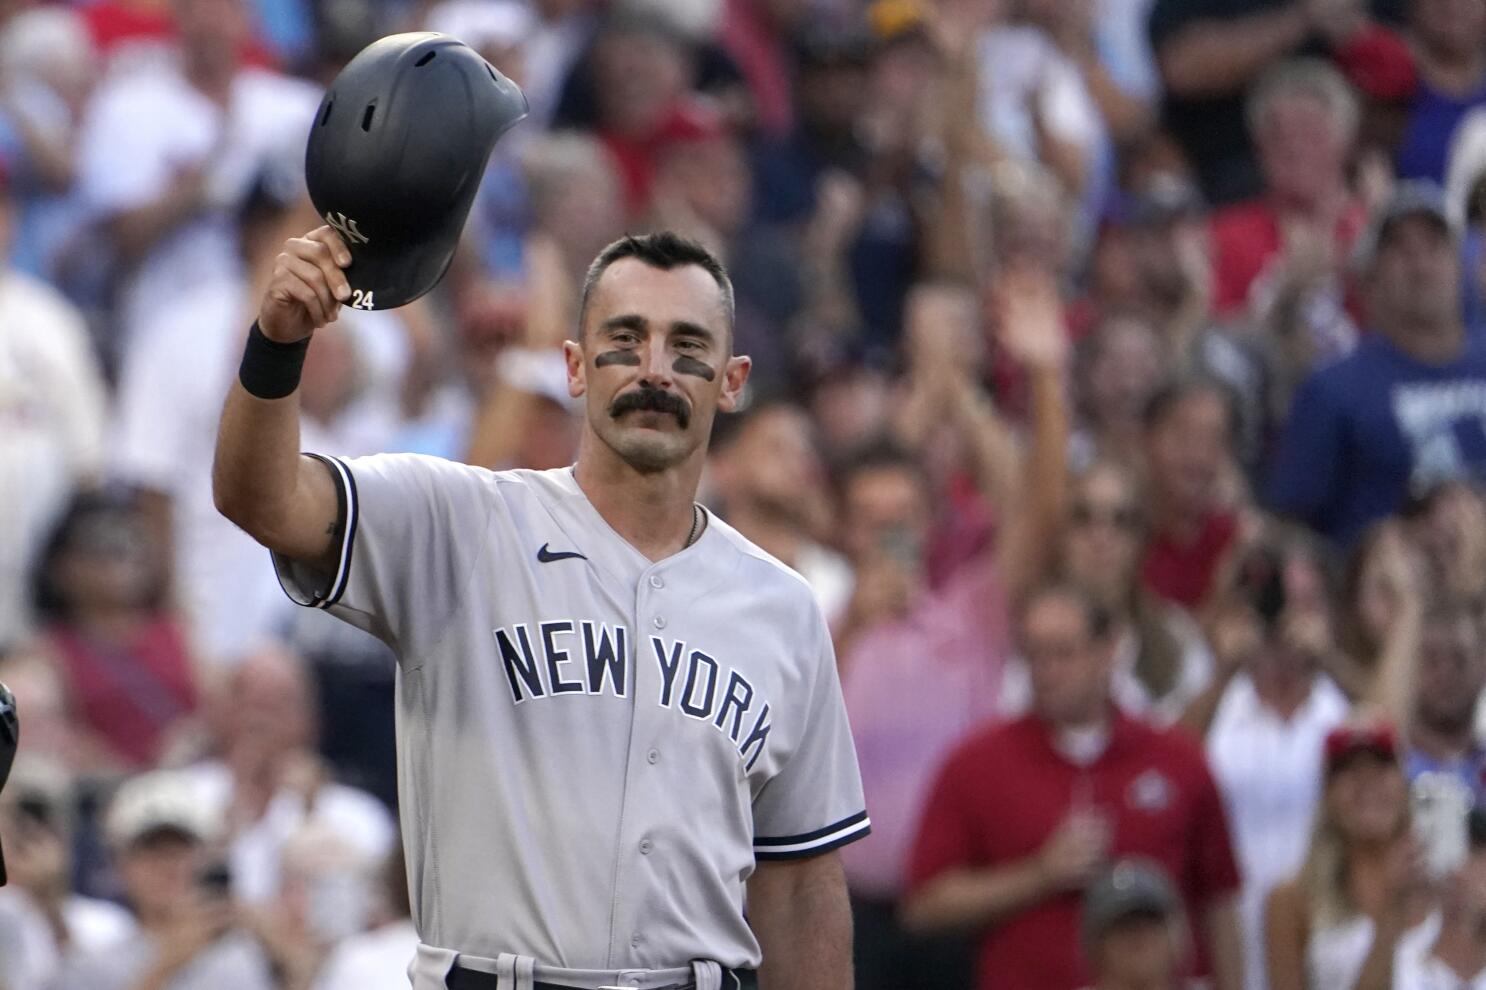 New York Yankees sign former St. Louis Cardinals star Matt